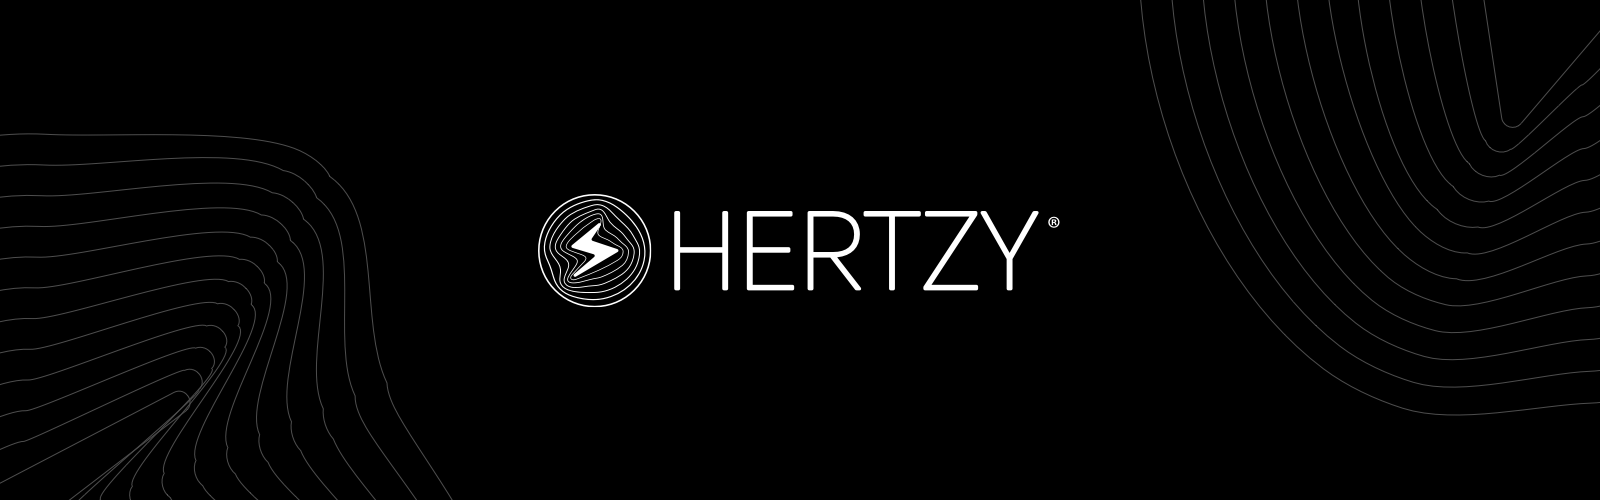 hertzy.png